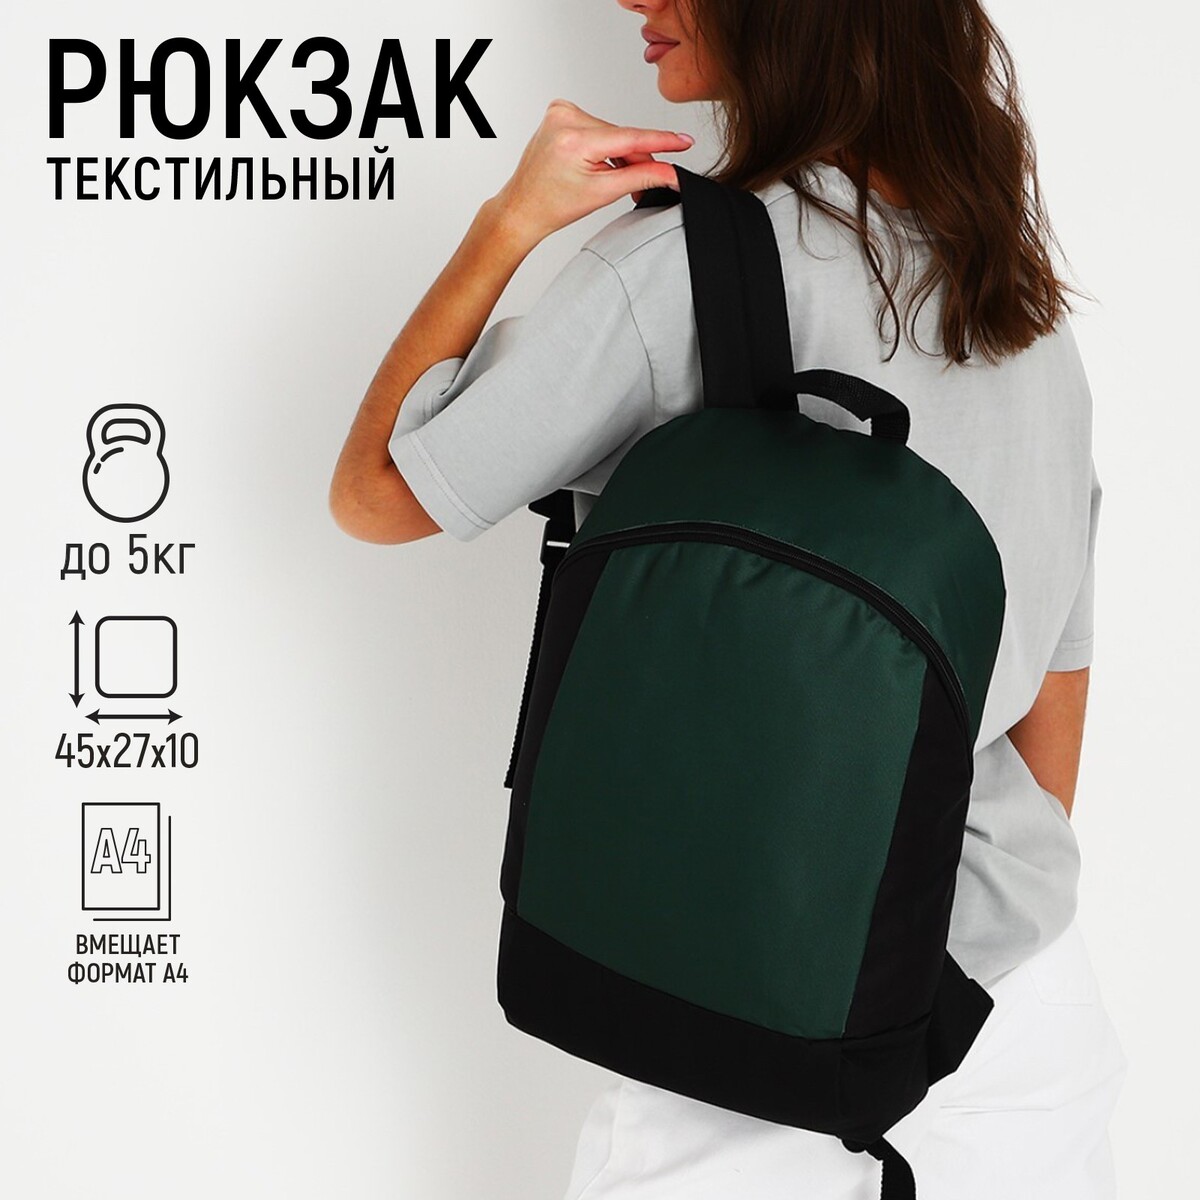 Рюкзак текстильный 46х30х10 см, вертикальный карман, цвет зеленый рюкзак текстильный 46х30х10 см вертикальный карман